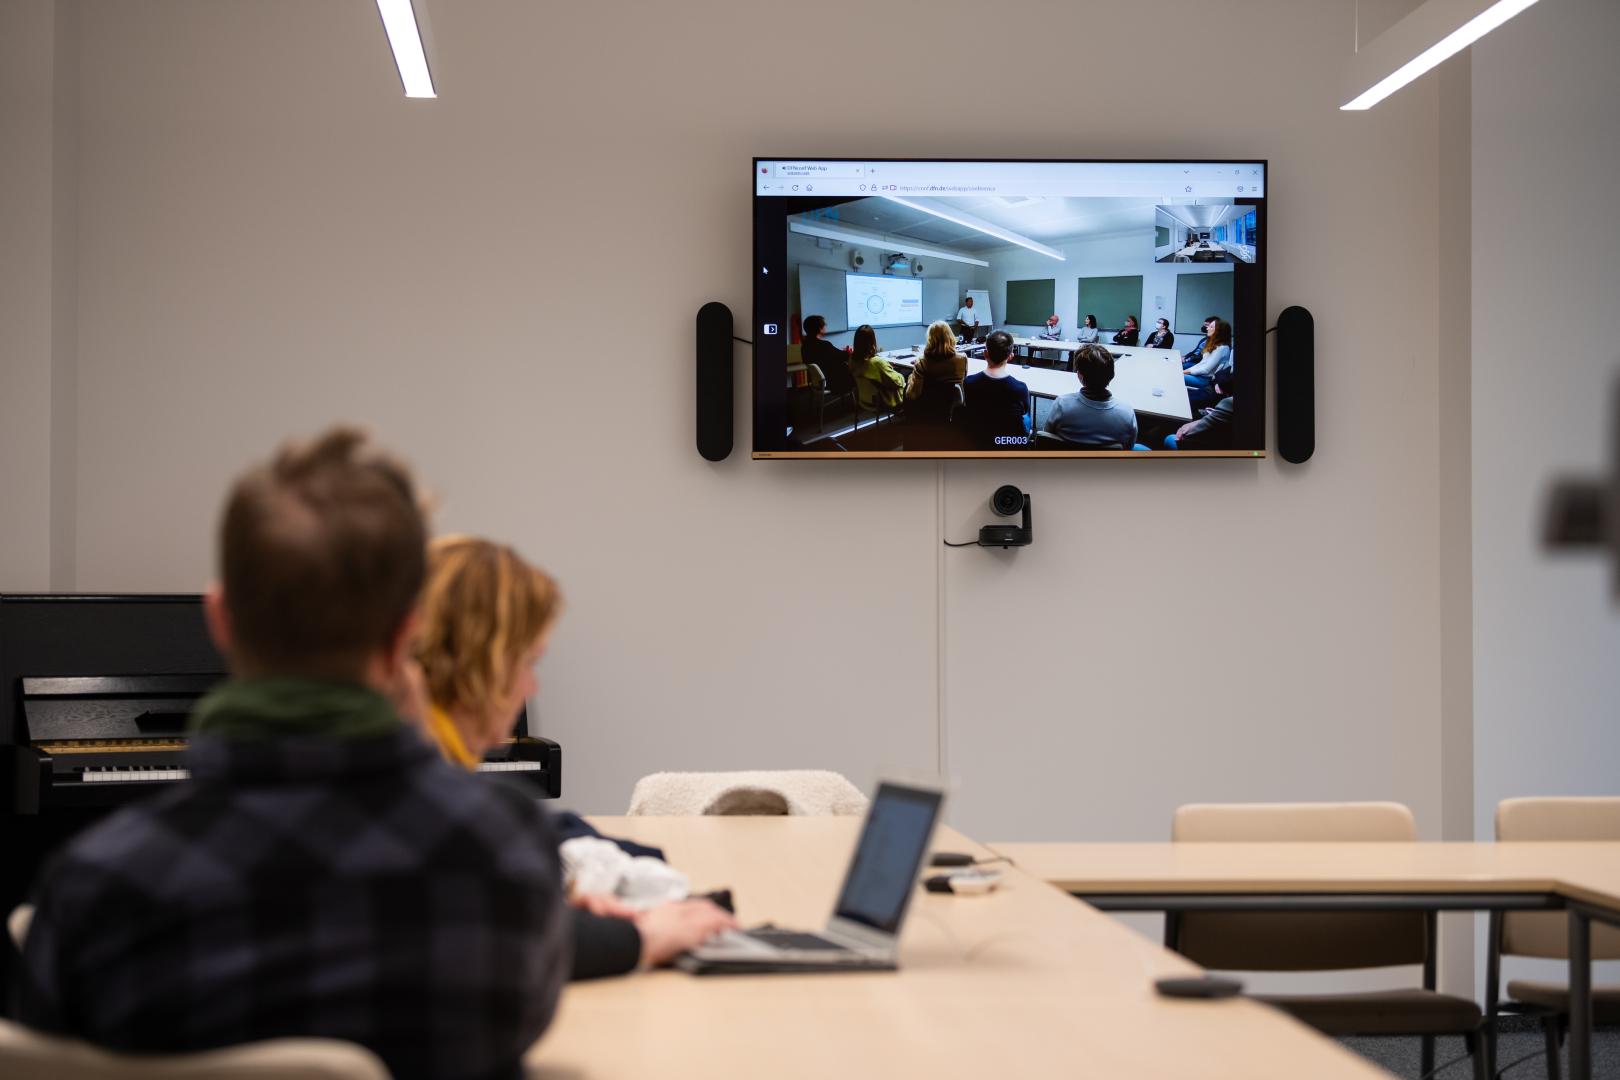 Seminarraum, Fokus des Bilds liegt auf einem Monitor an der Wand, auf den ein Seminar aus einem anderen Raum übertragen wird.